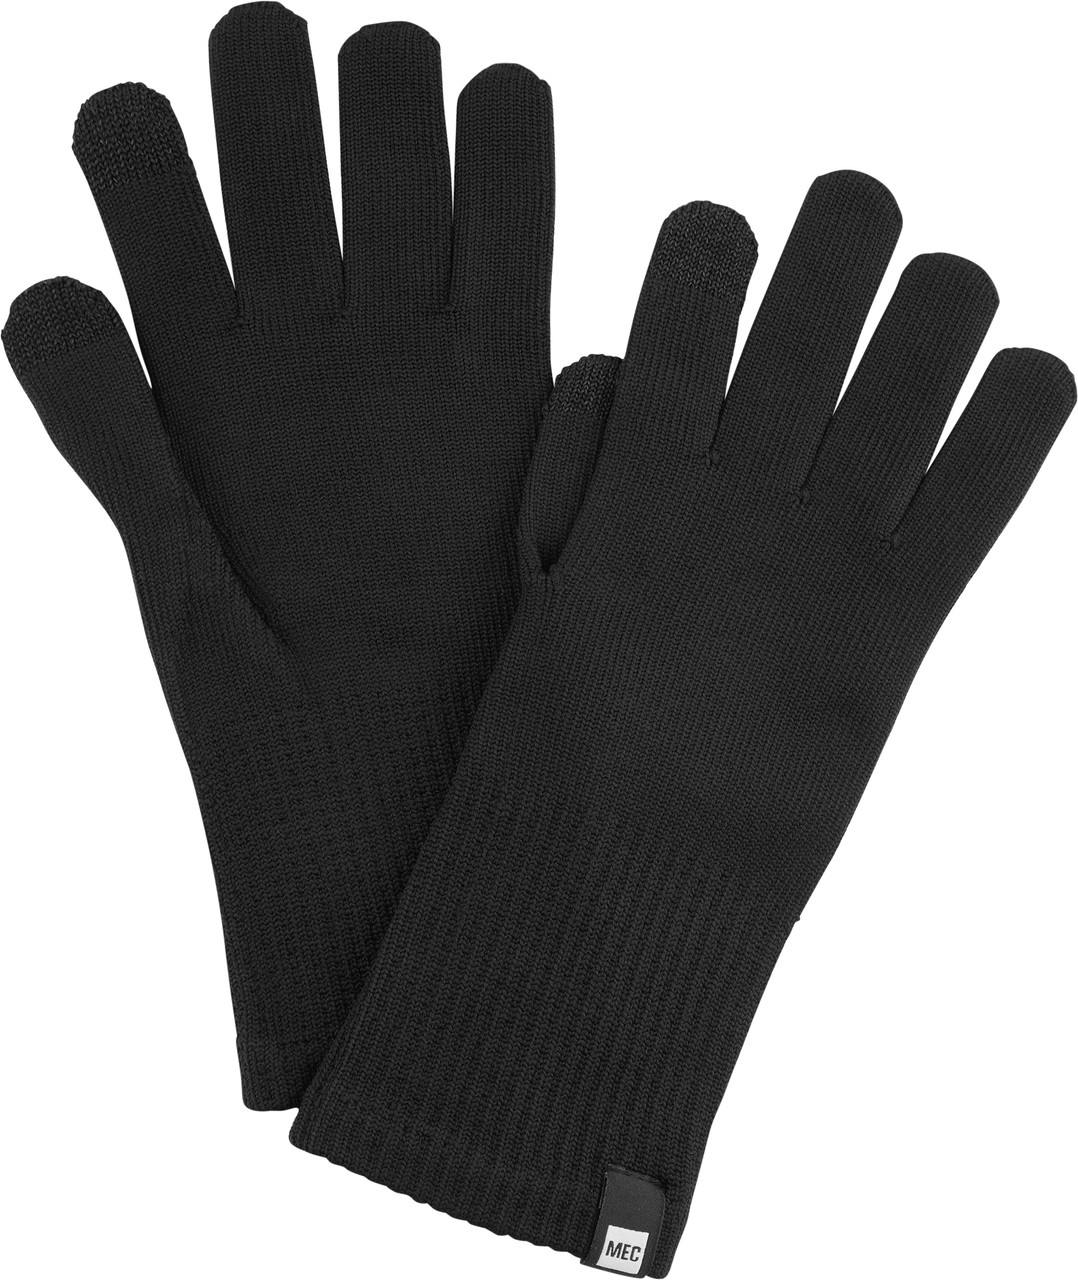 Polypro Liner Gloves Black